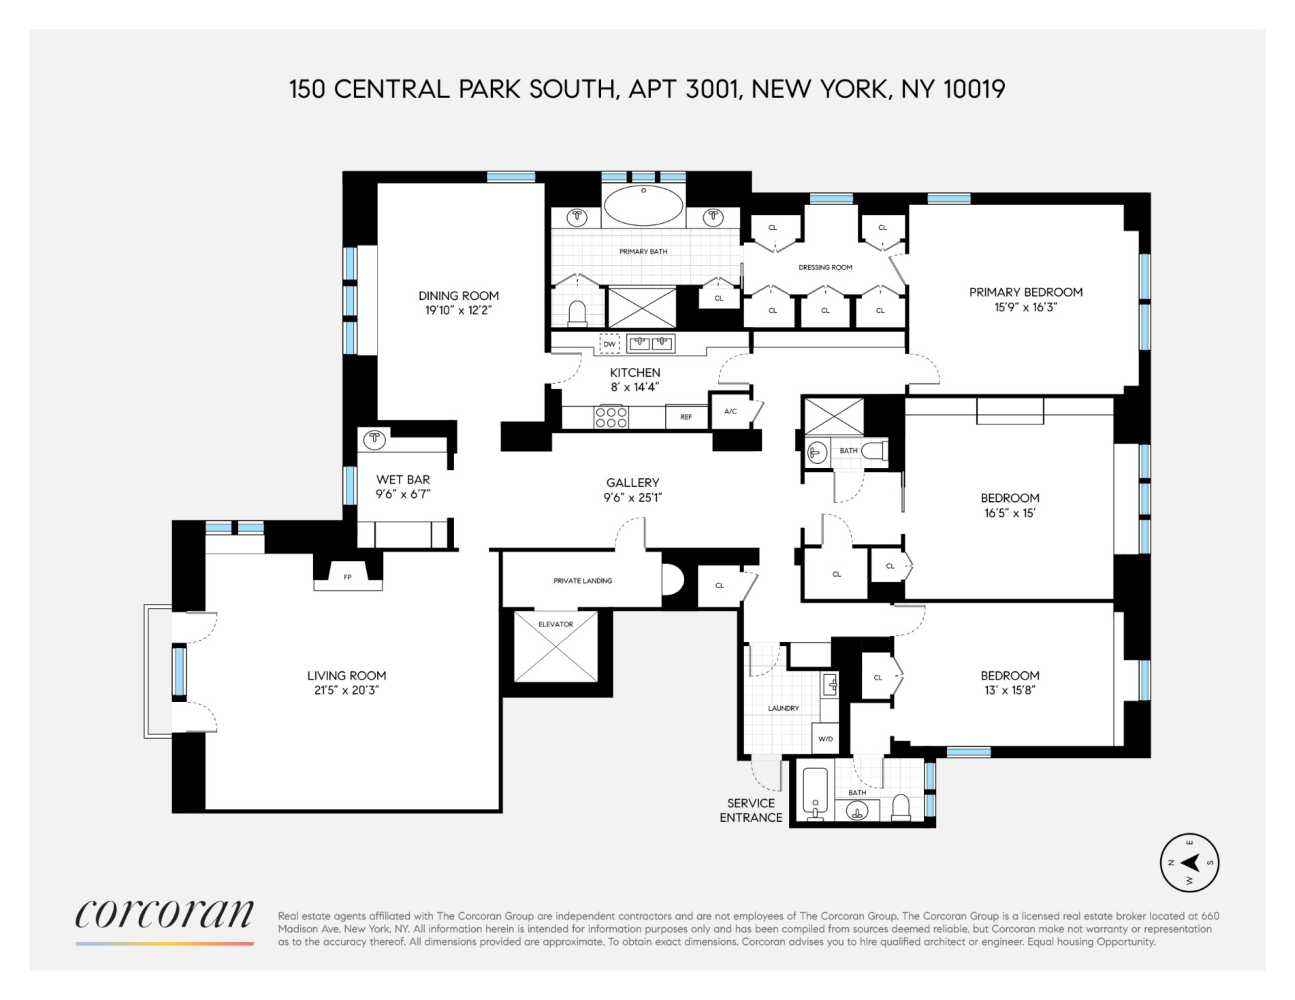 Floorplan for 150 Central Park, 3001